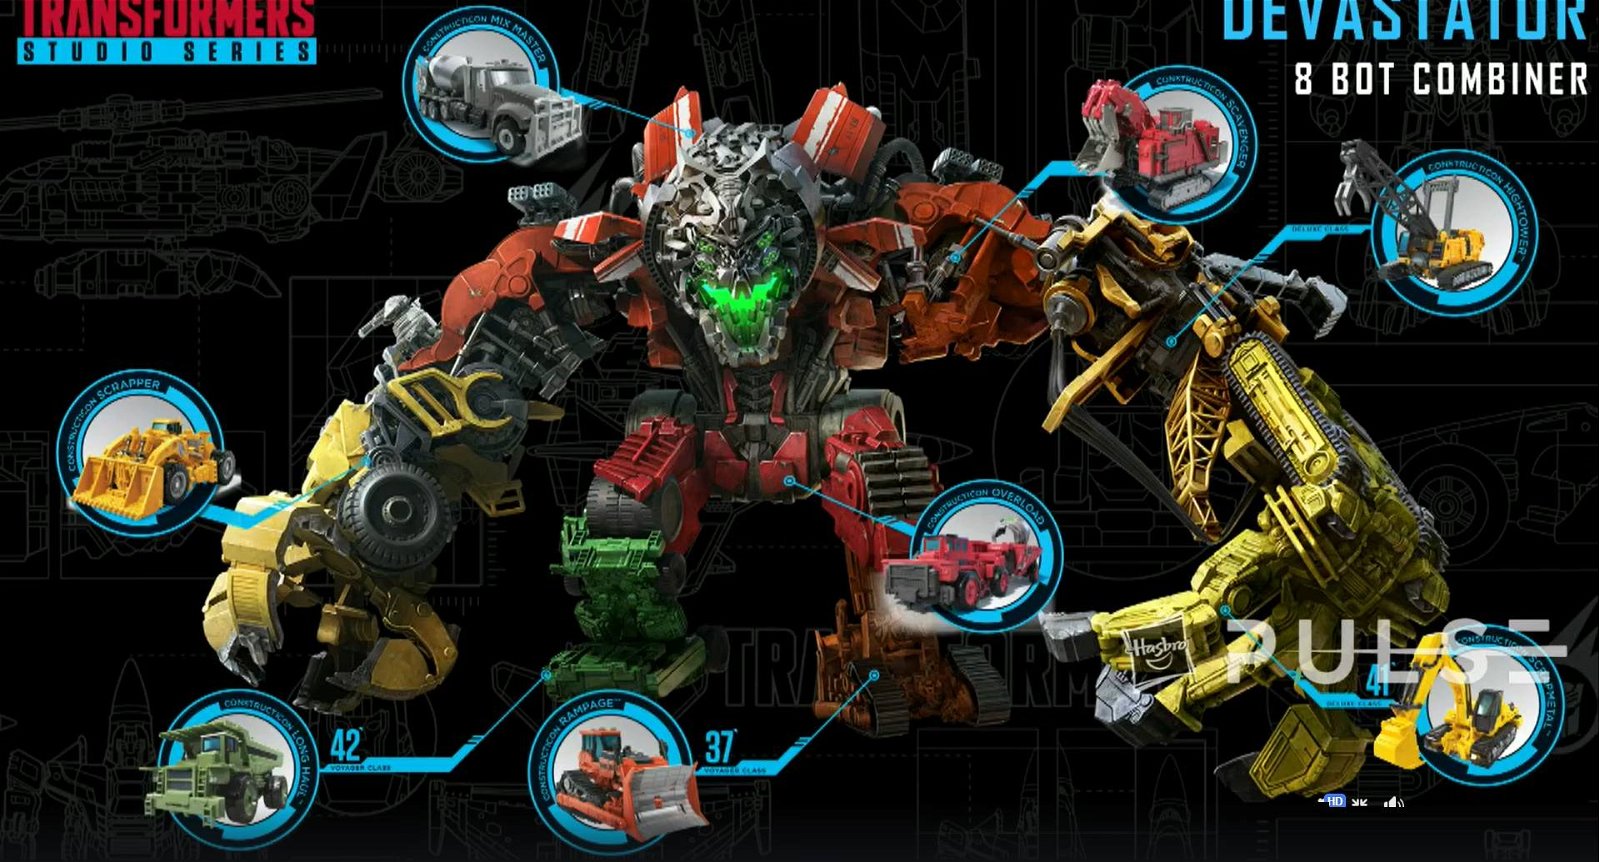 Immagine di NYTF 2020: ecco tutti i prodotti a tema Transformers di Hasbro